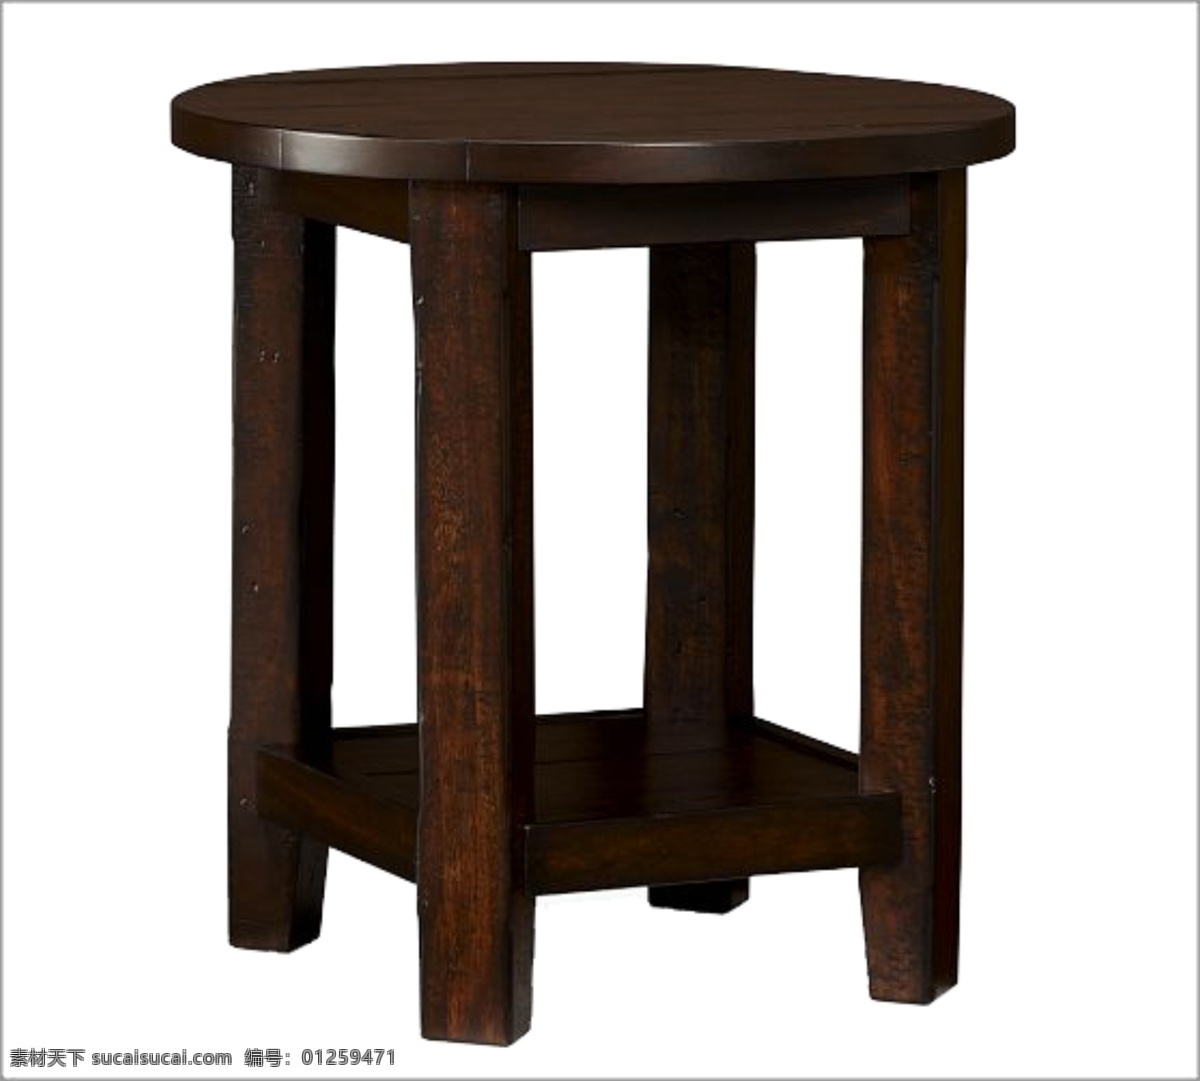 复古 圆形 桌子 2素材 复古png 复古素材 复古桌子 免抠素材 素材复古 圆桌 圆桌免抠 圆桌素材 桌子素材